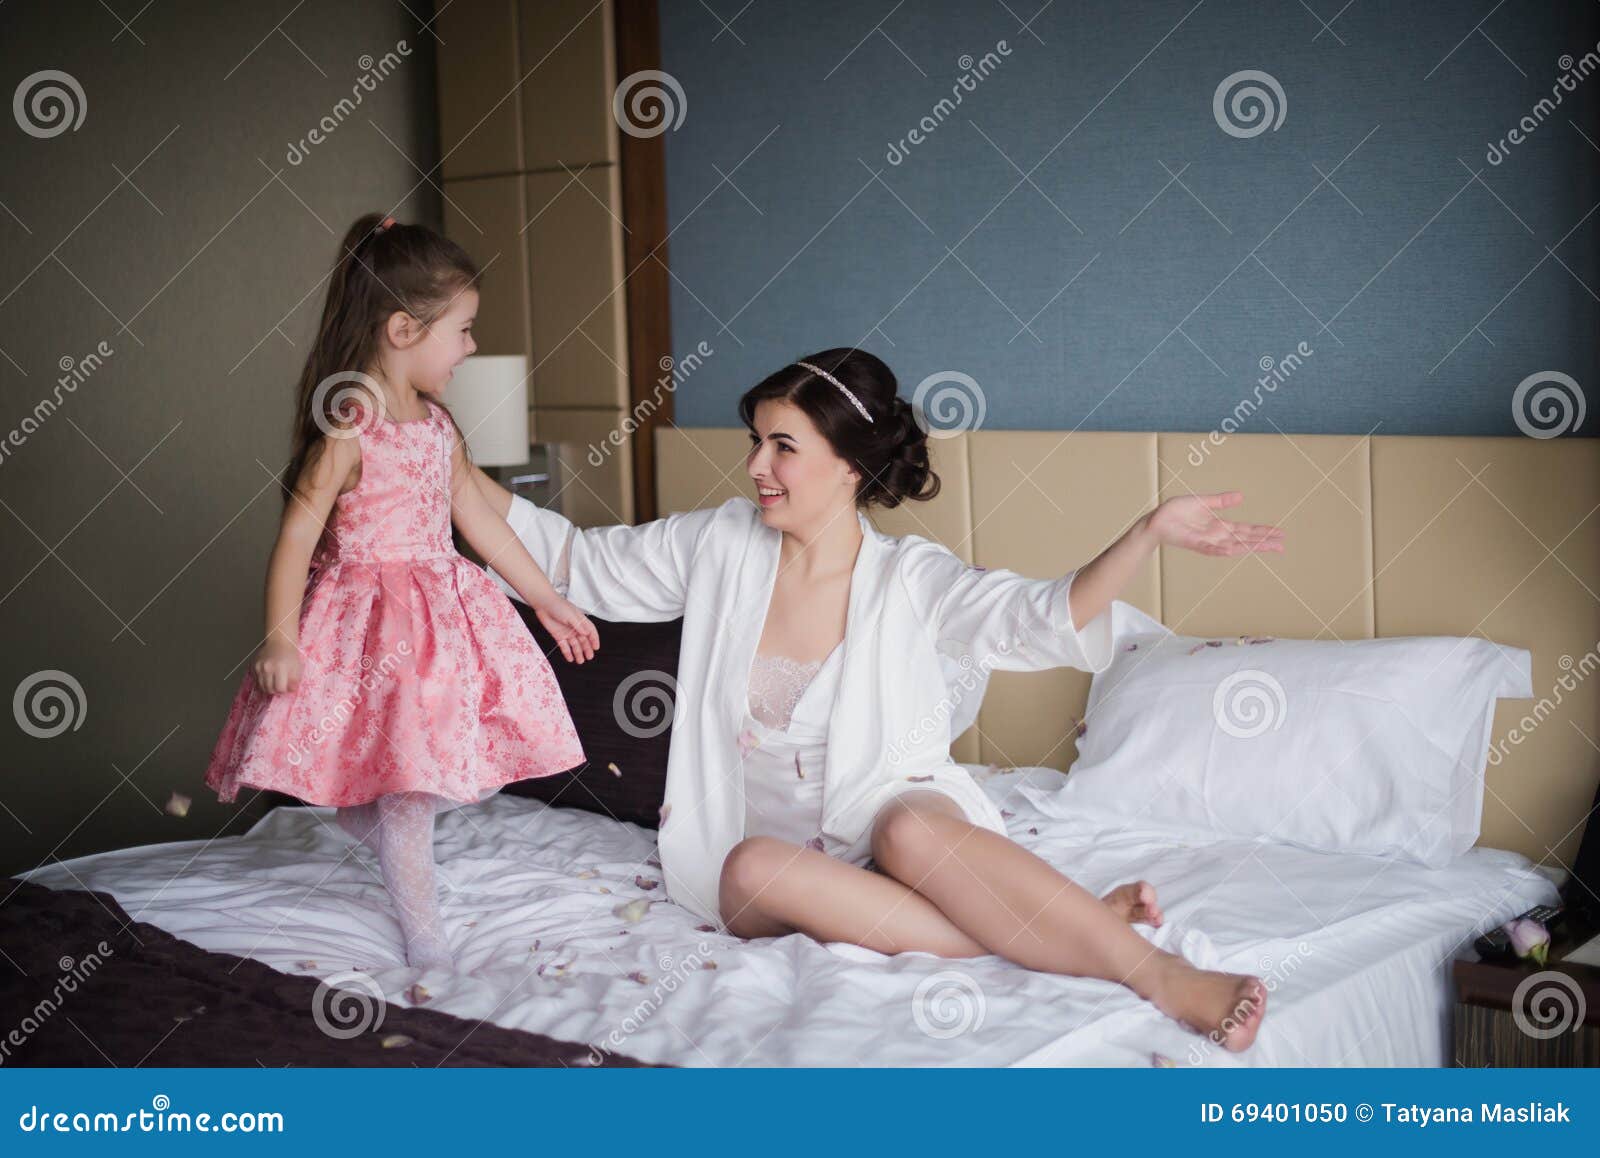 Мама с дочкой в постели. Мамас дочкой накрлвати. Фотосессия с дочкой на кровати. Мама с дочкой на кровати. Мама с дочкой фотосессия на кровати.